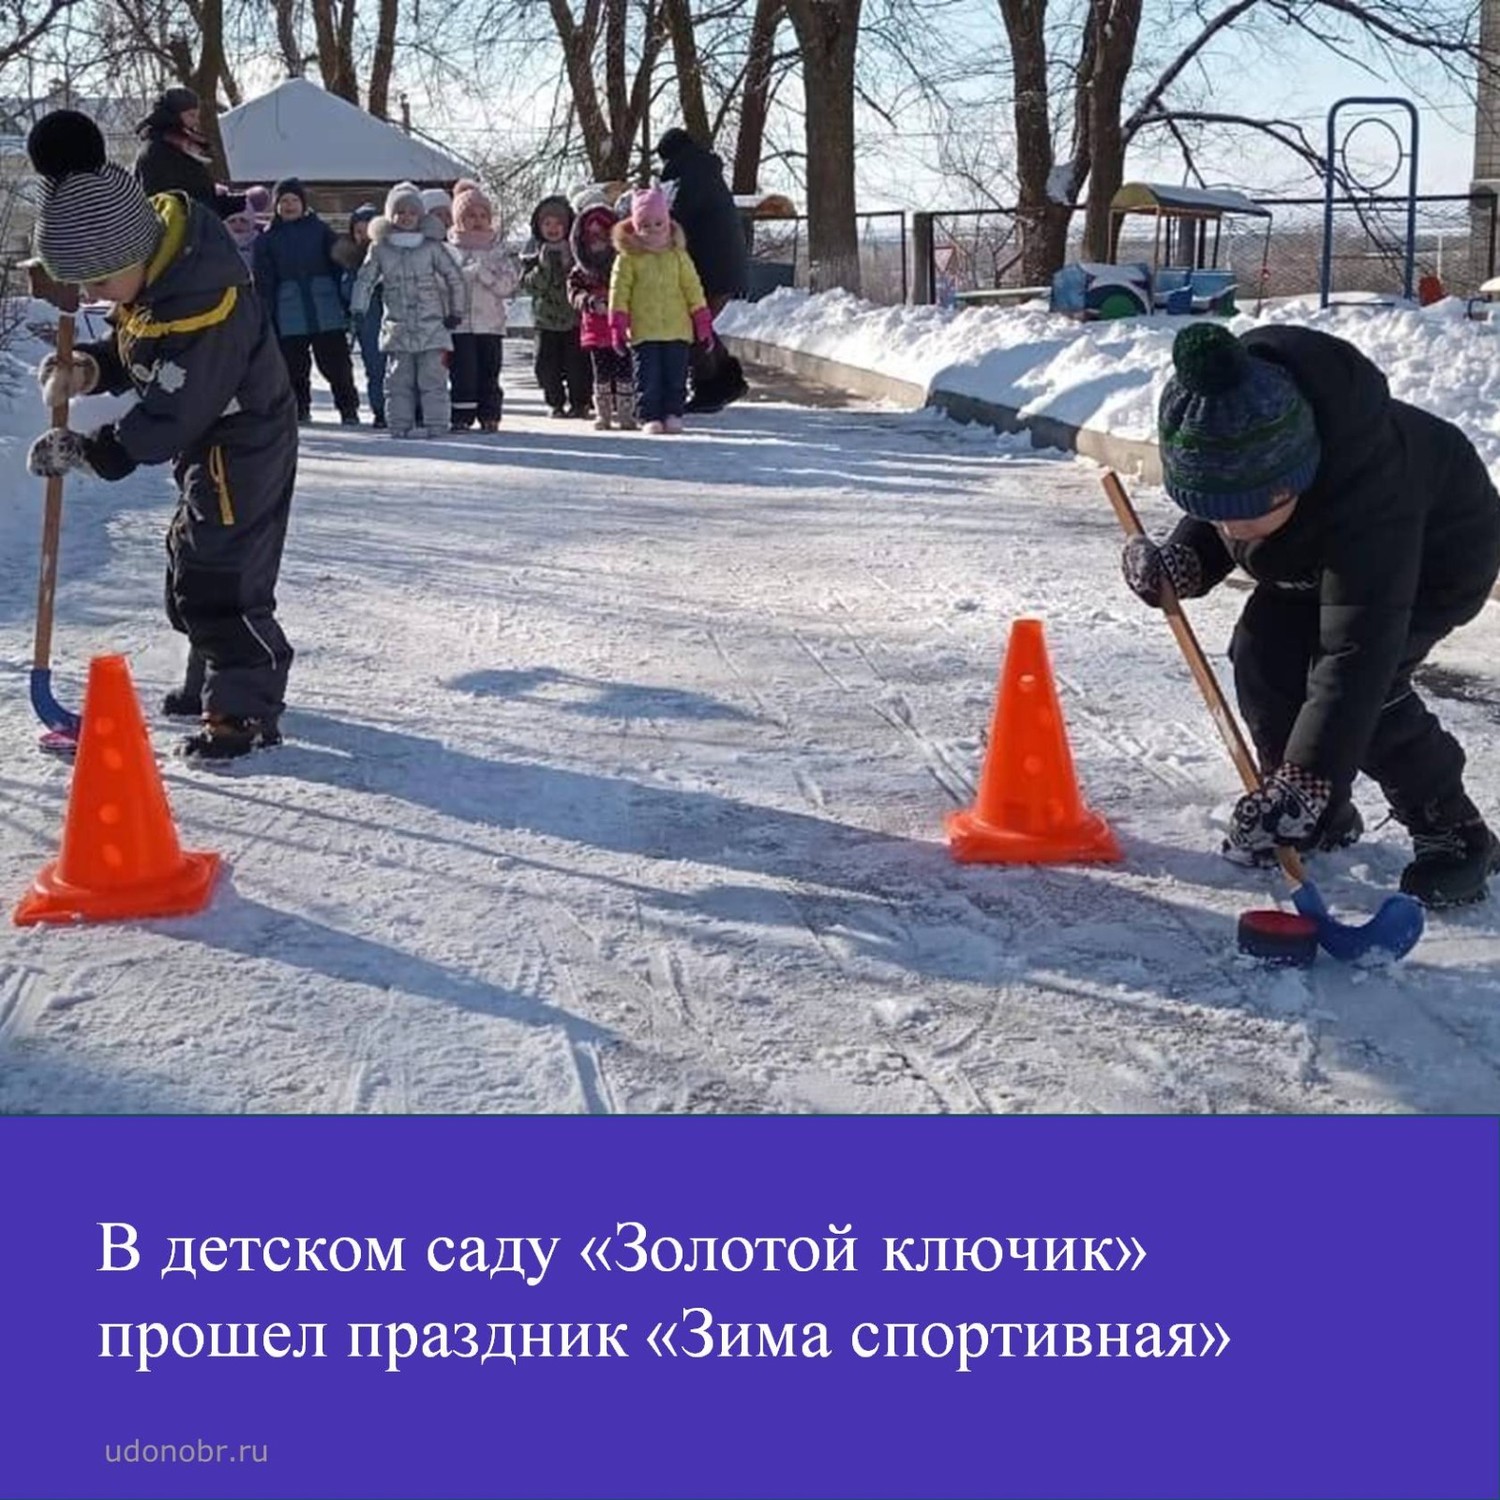 В детском саду «Золотой ключик» прошел праздник «Зима спортивная»